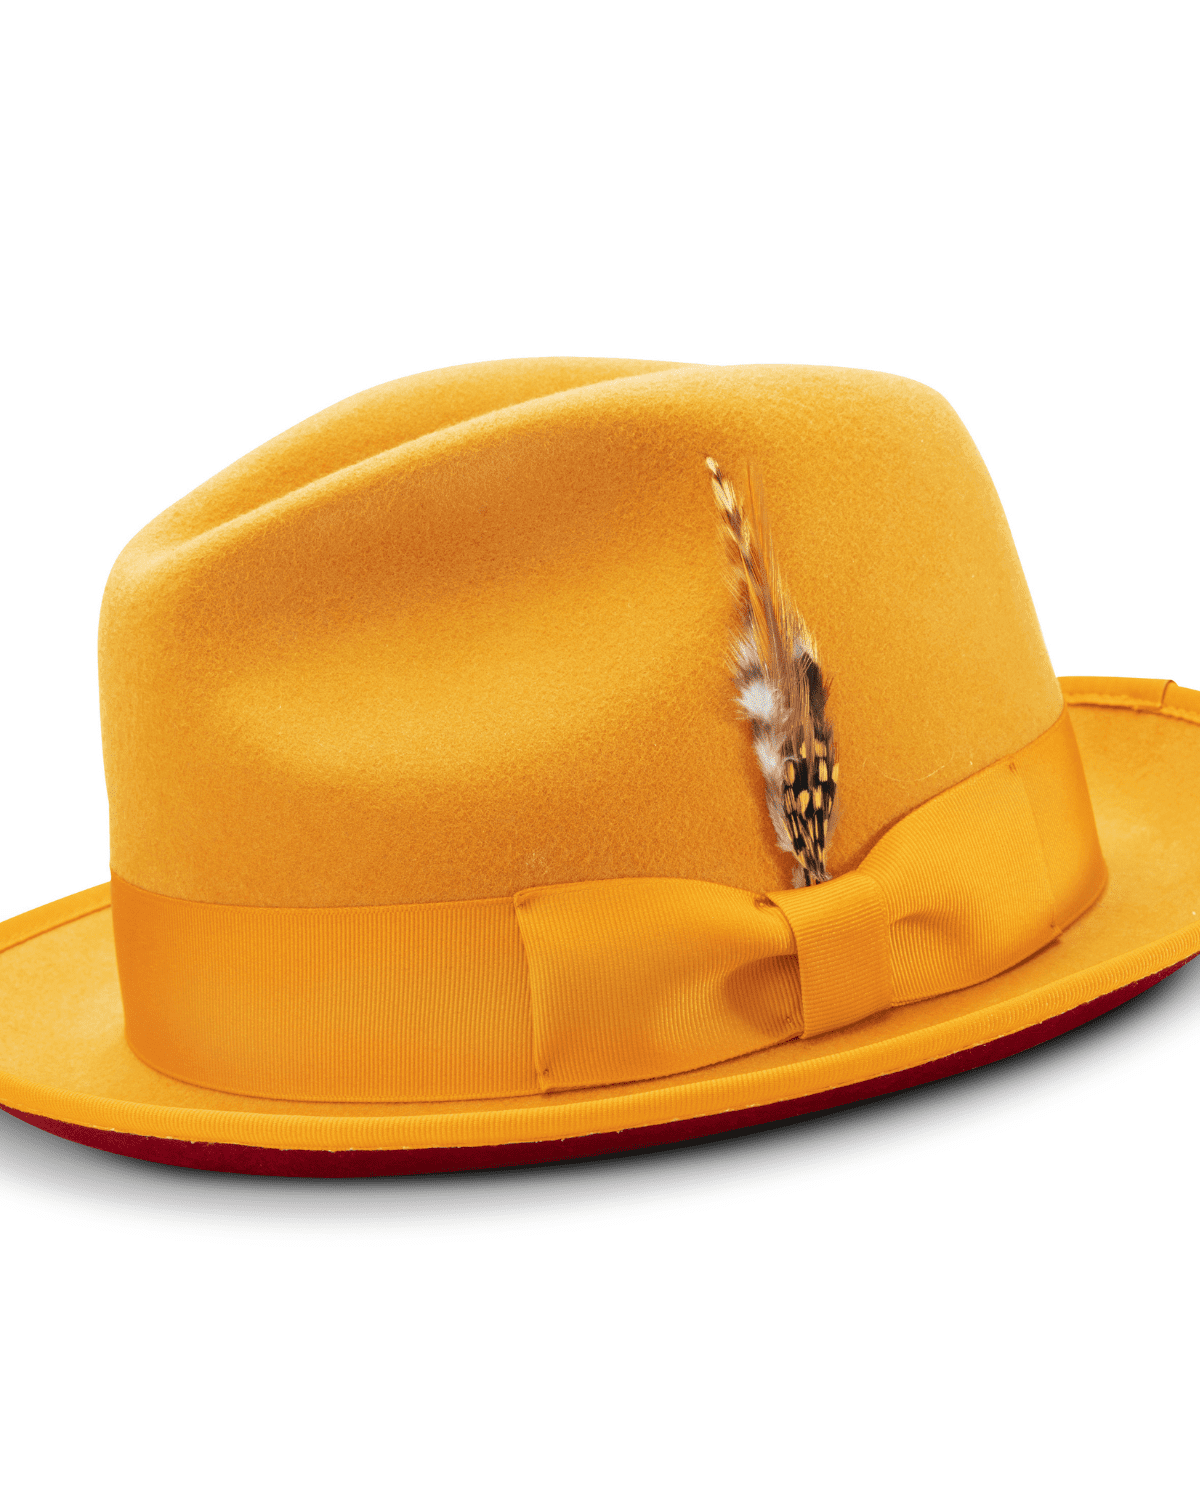 red bottom yellow fedora hat